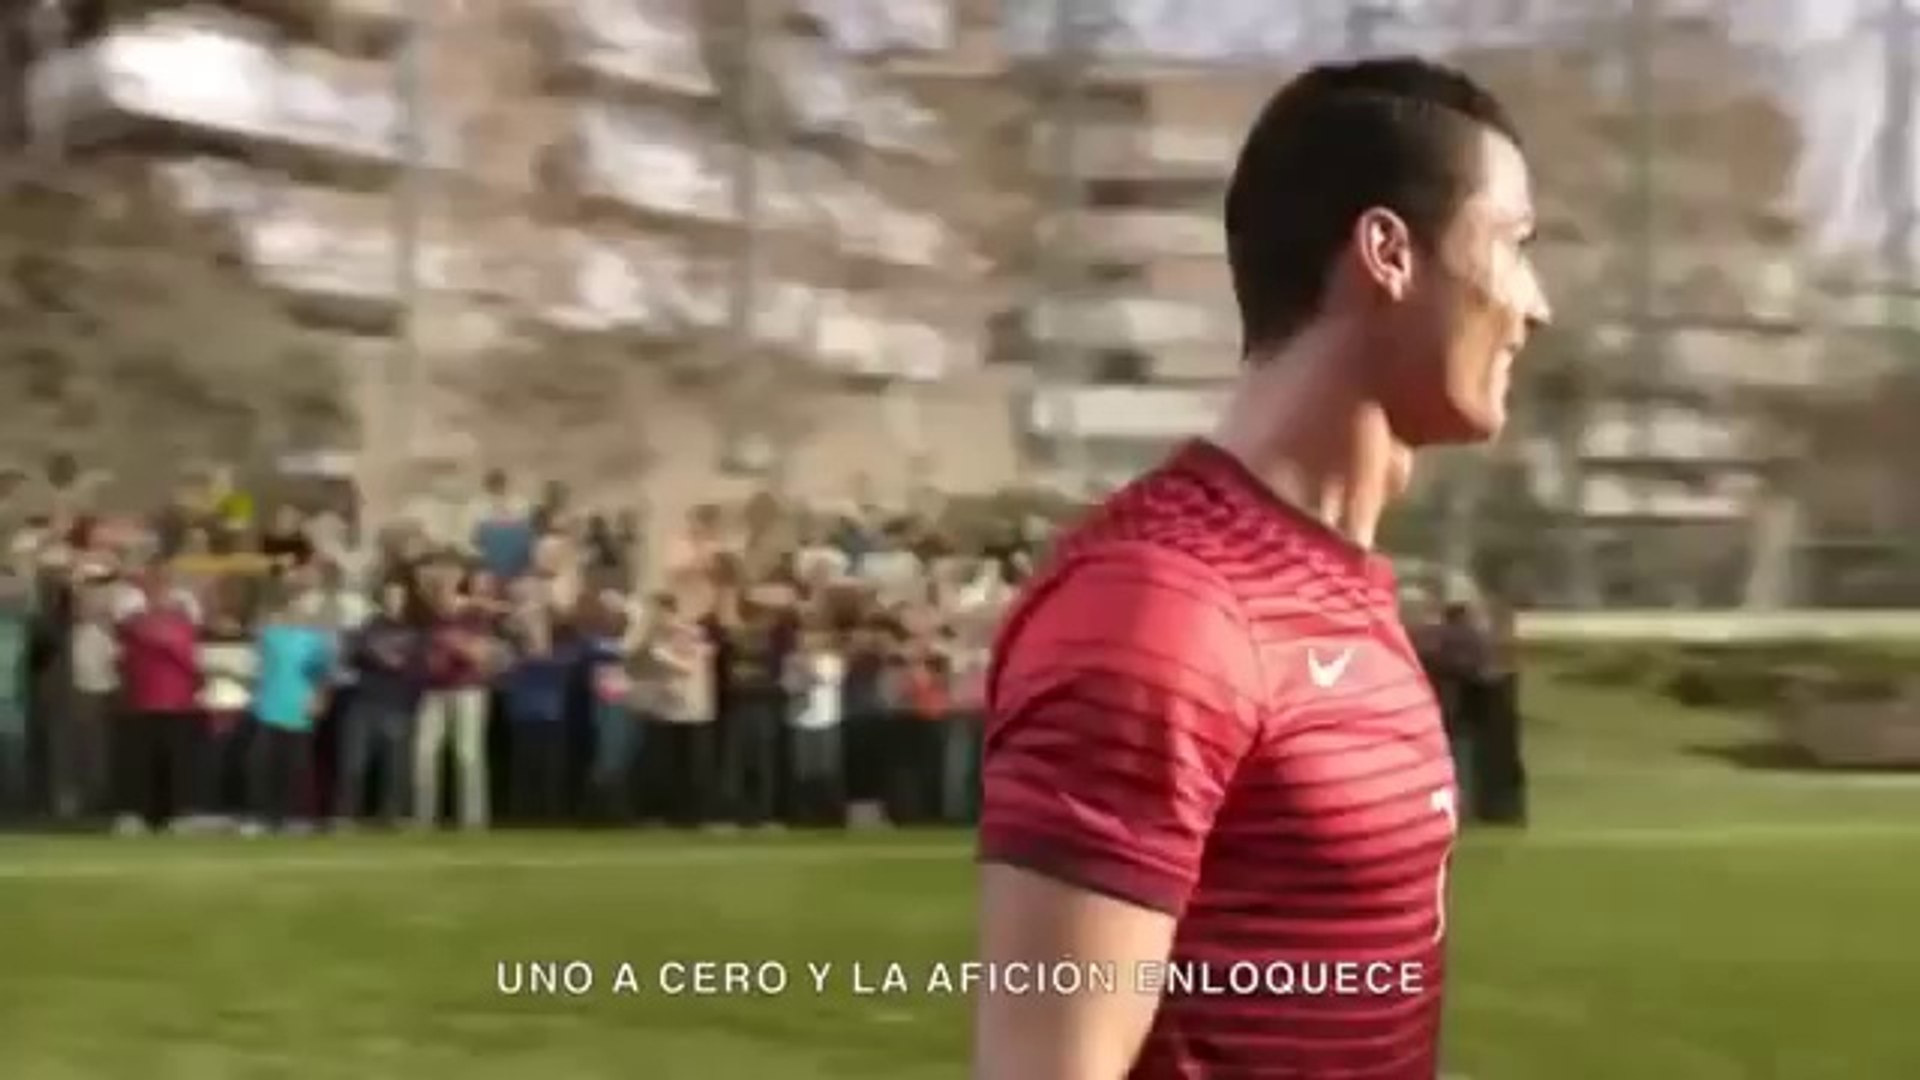 Nike Futbol - El Que Gana Se Queda con Ronaldo, Neymar Jr, Rooney,  IbrahimoviÄ‡, Iniesta y mÃ¡s. - Vídeo Dailymotion